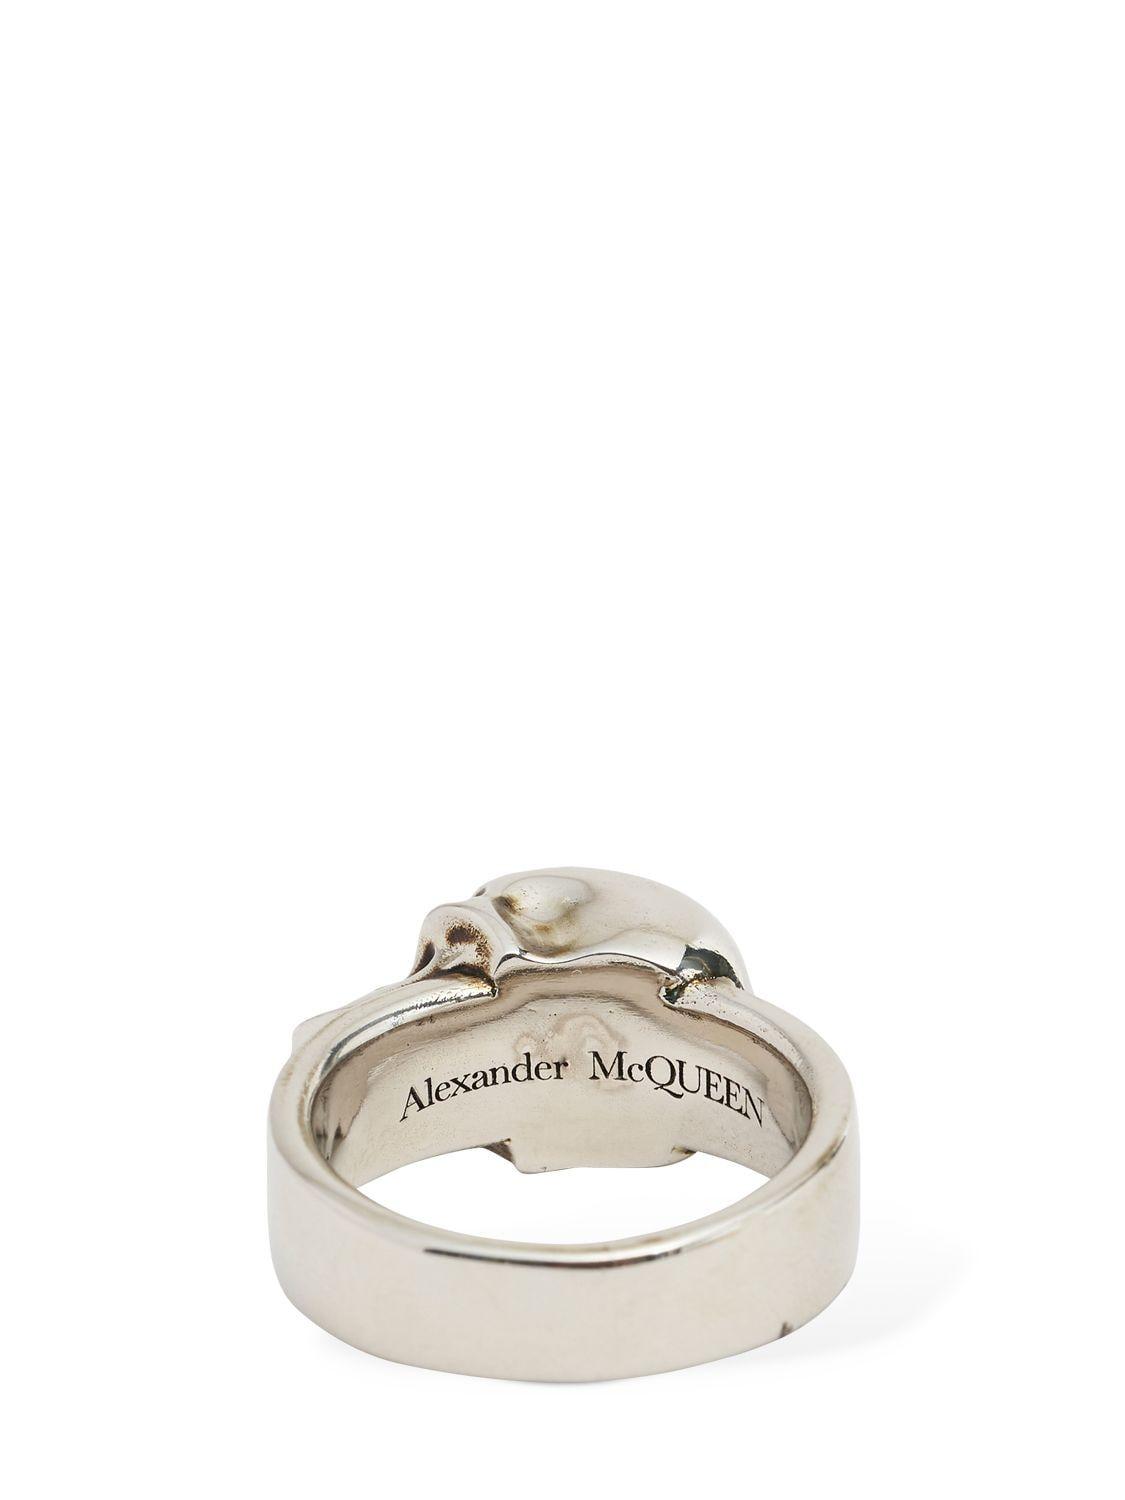 Alexander McQueen Gold/silver brass ring